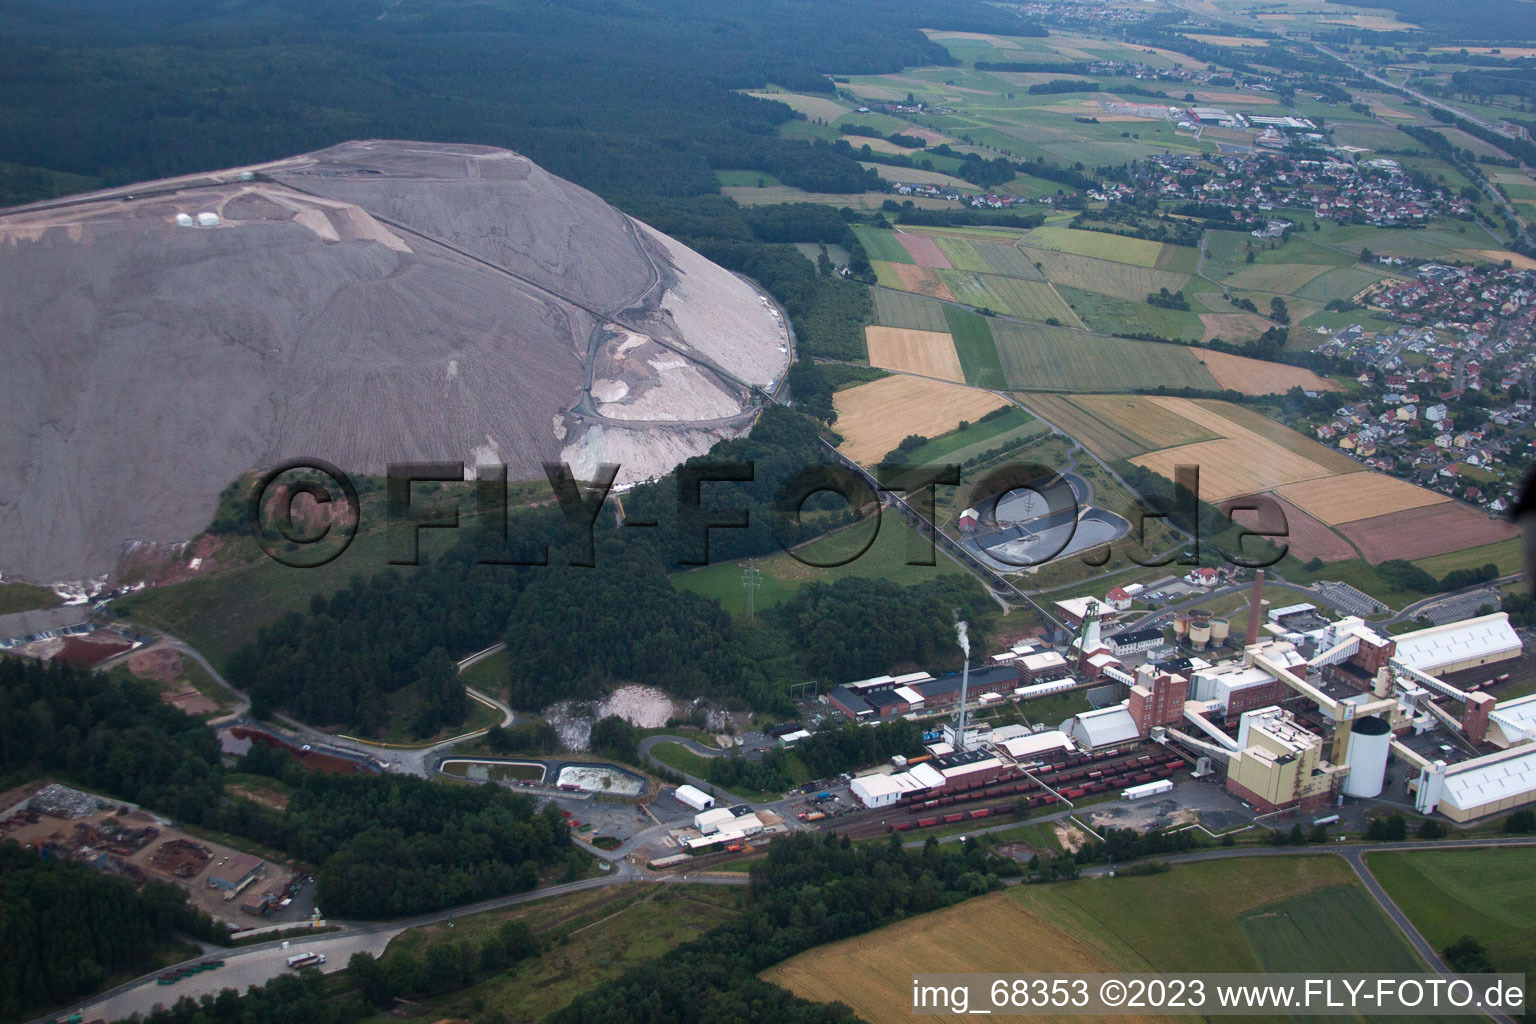 Luftbild von Monte Kali bei Neuhof im Bundesland Hessen, Deutschland